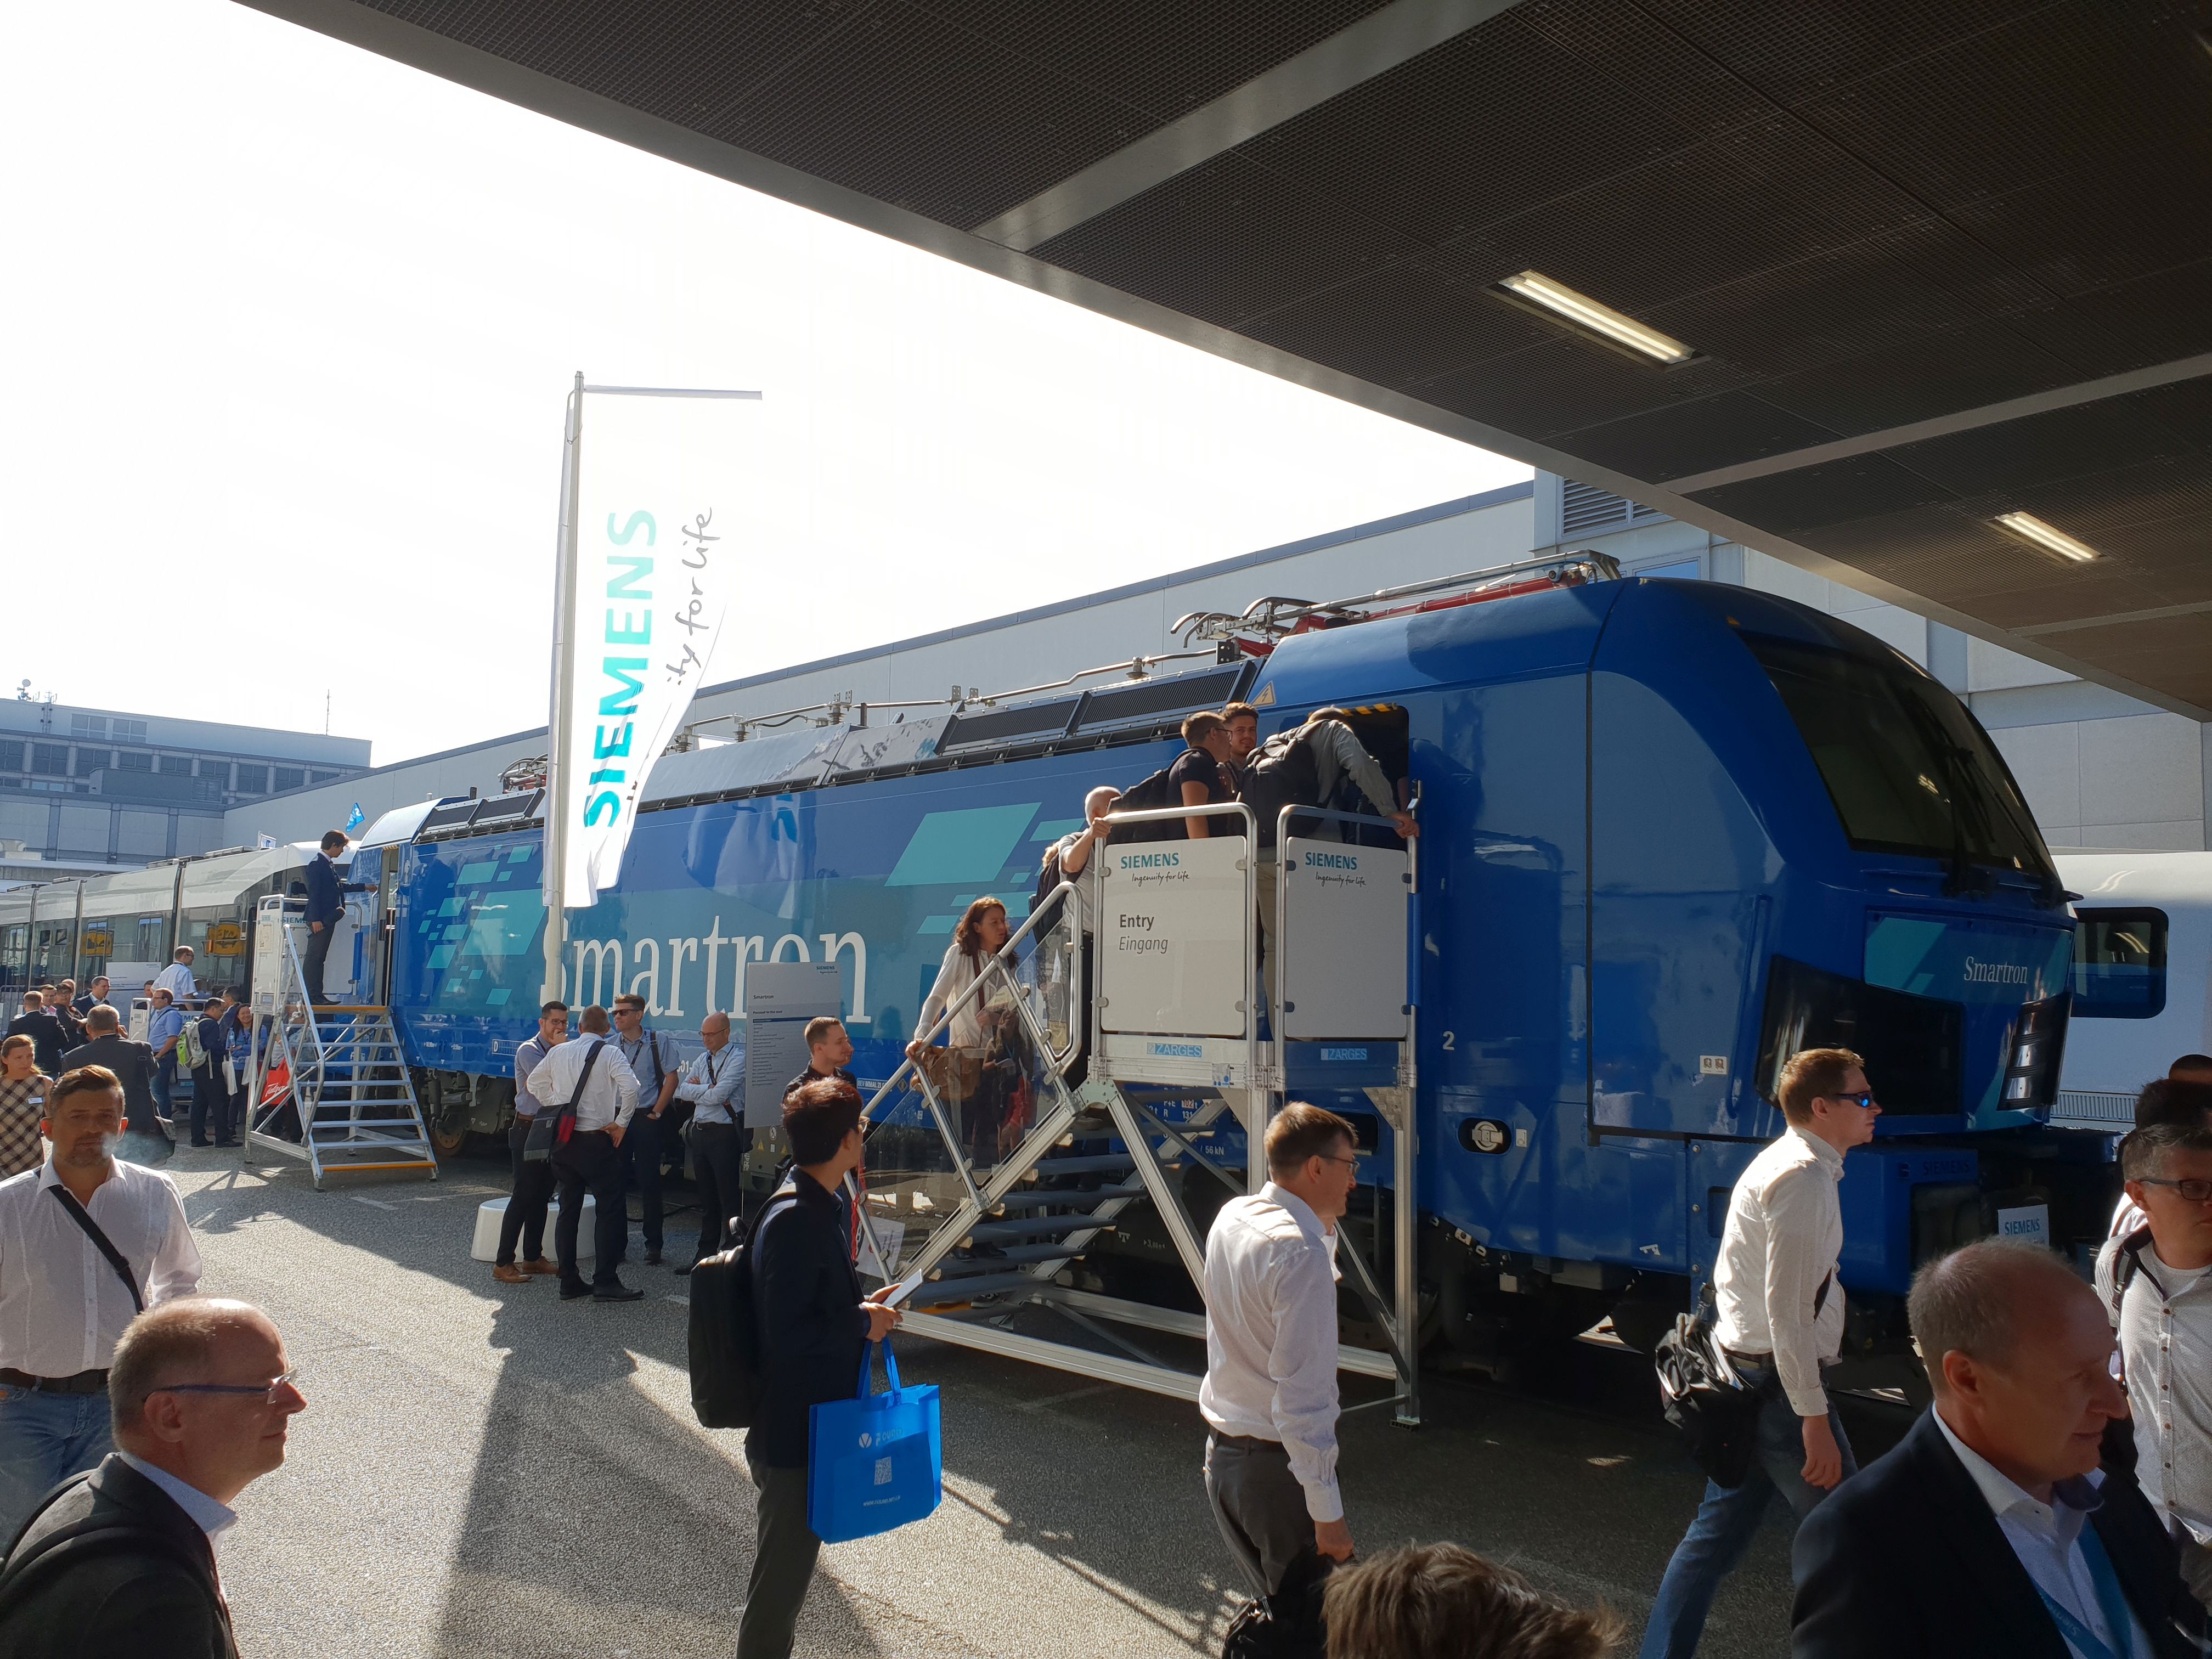 Foto: Smartron von Siemens auf der Berliner Innotrans 2018